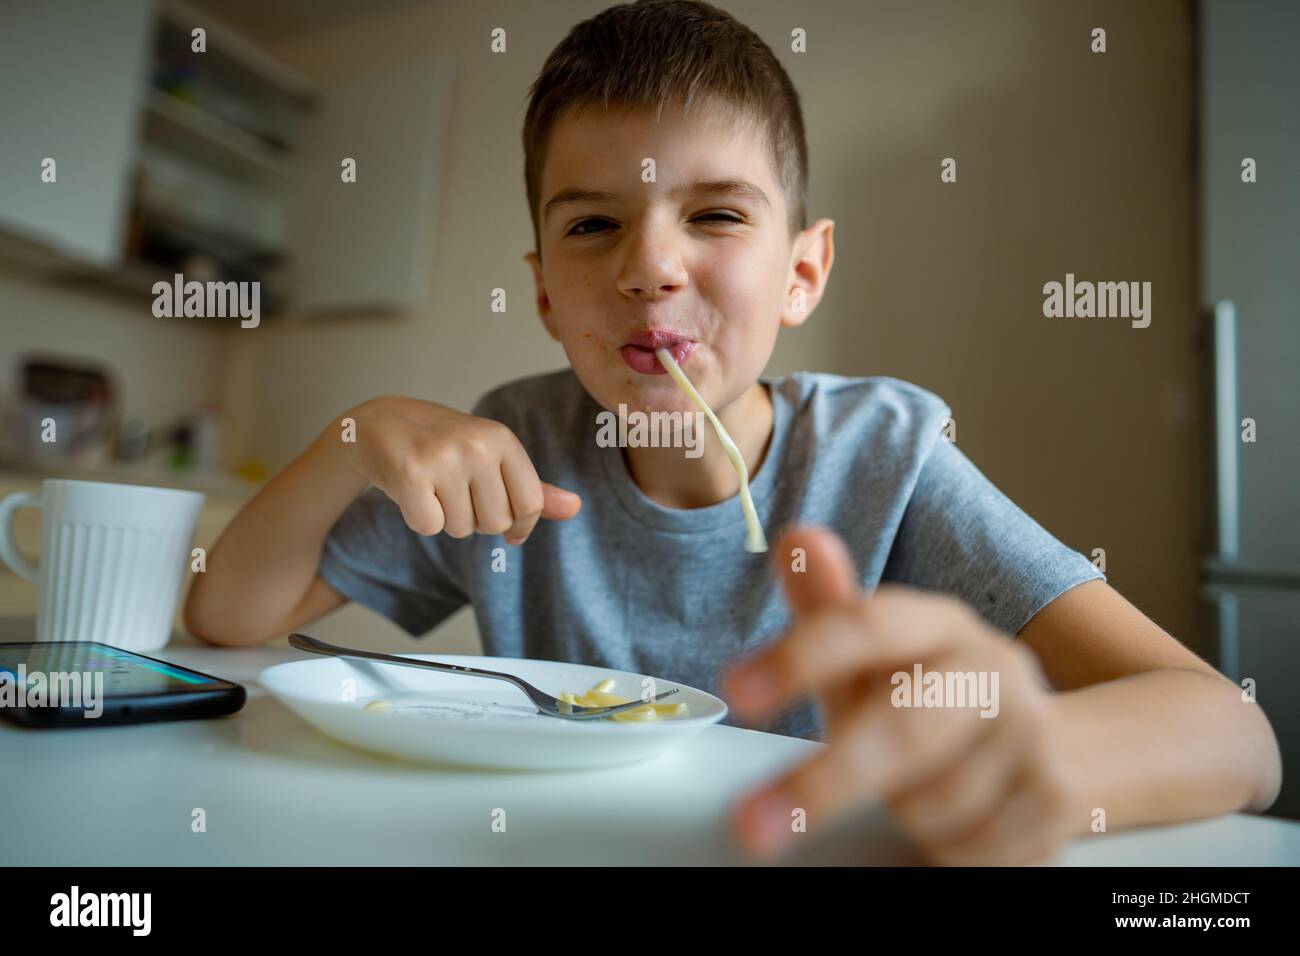 Fröhlicher, hungriger Junge isst Pasta mit Appetit, Rückzug in Pasta spielerisch Stockfoto